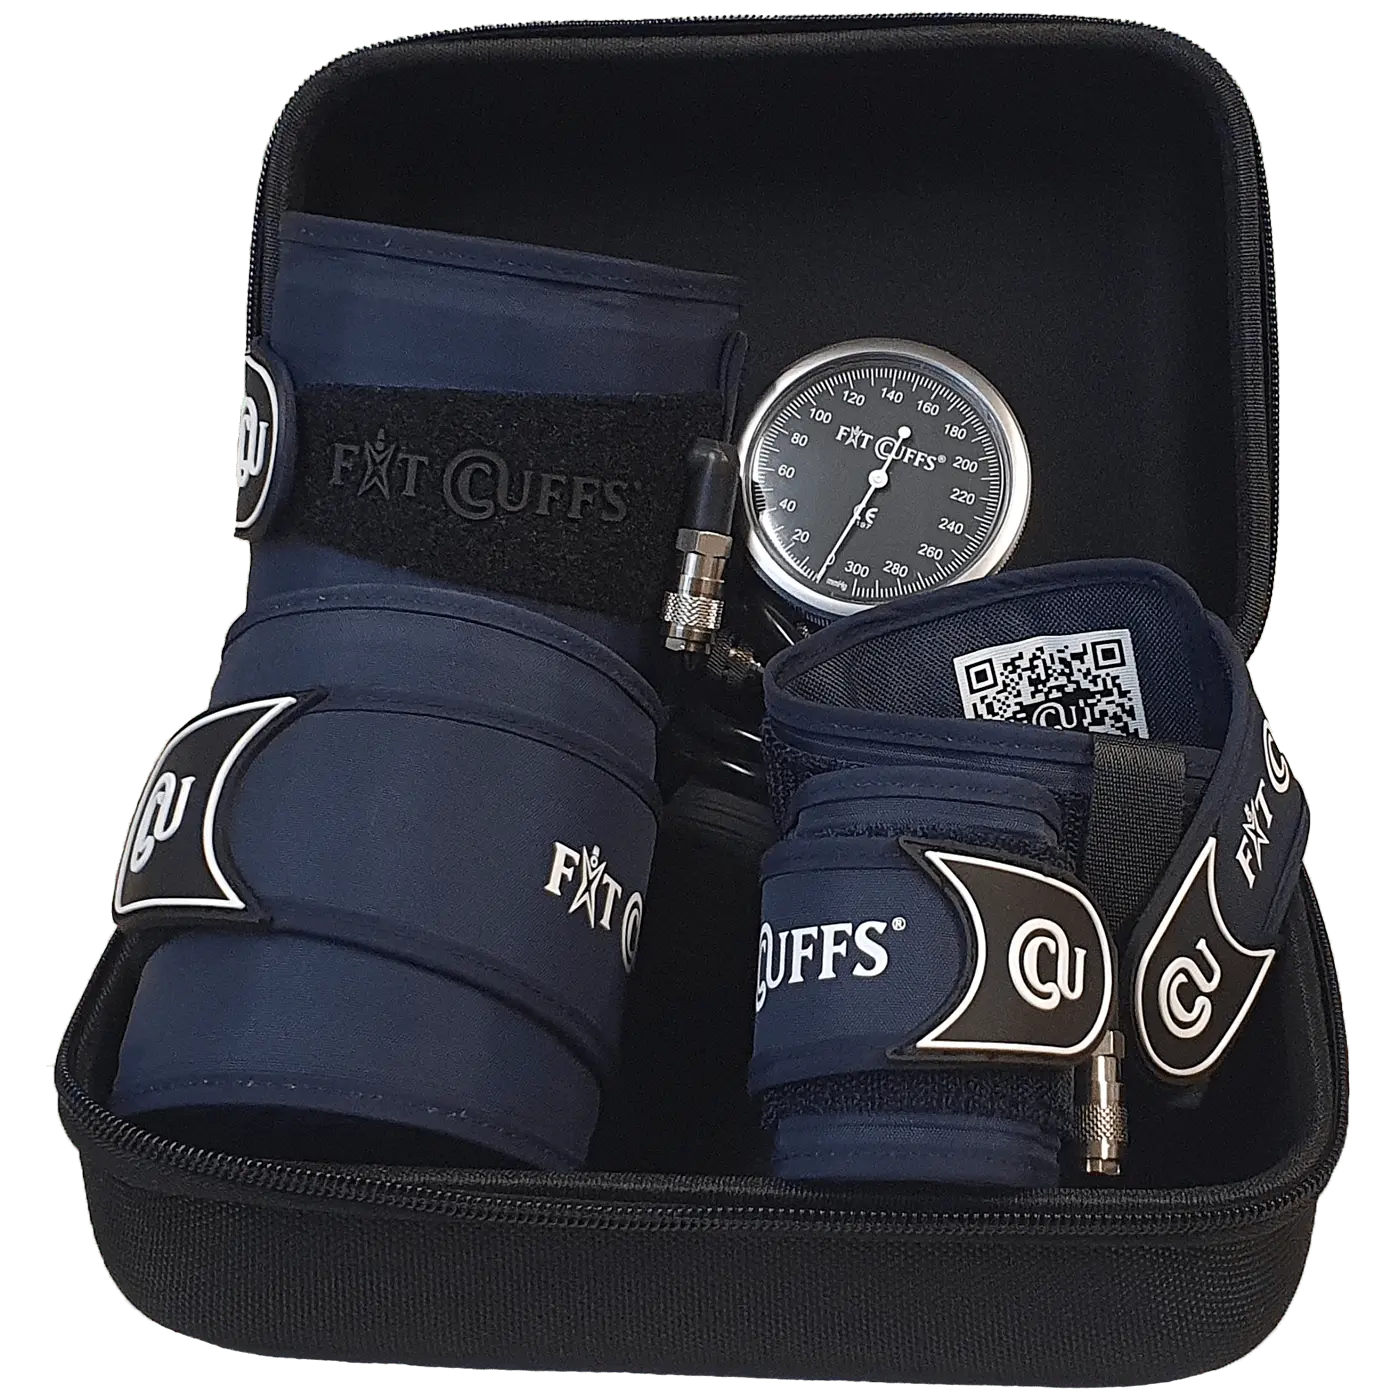 Se Fit Cuffs - Complete Hard Case - Standard hos Fitcuffs.com